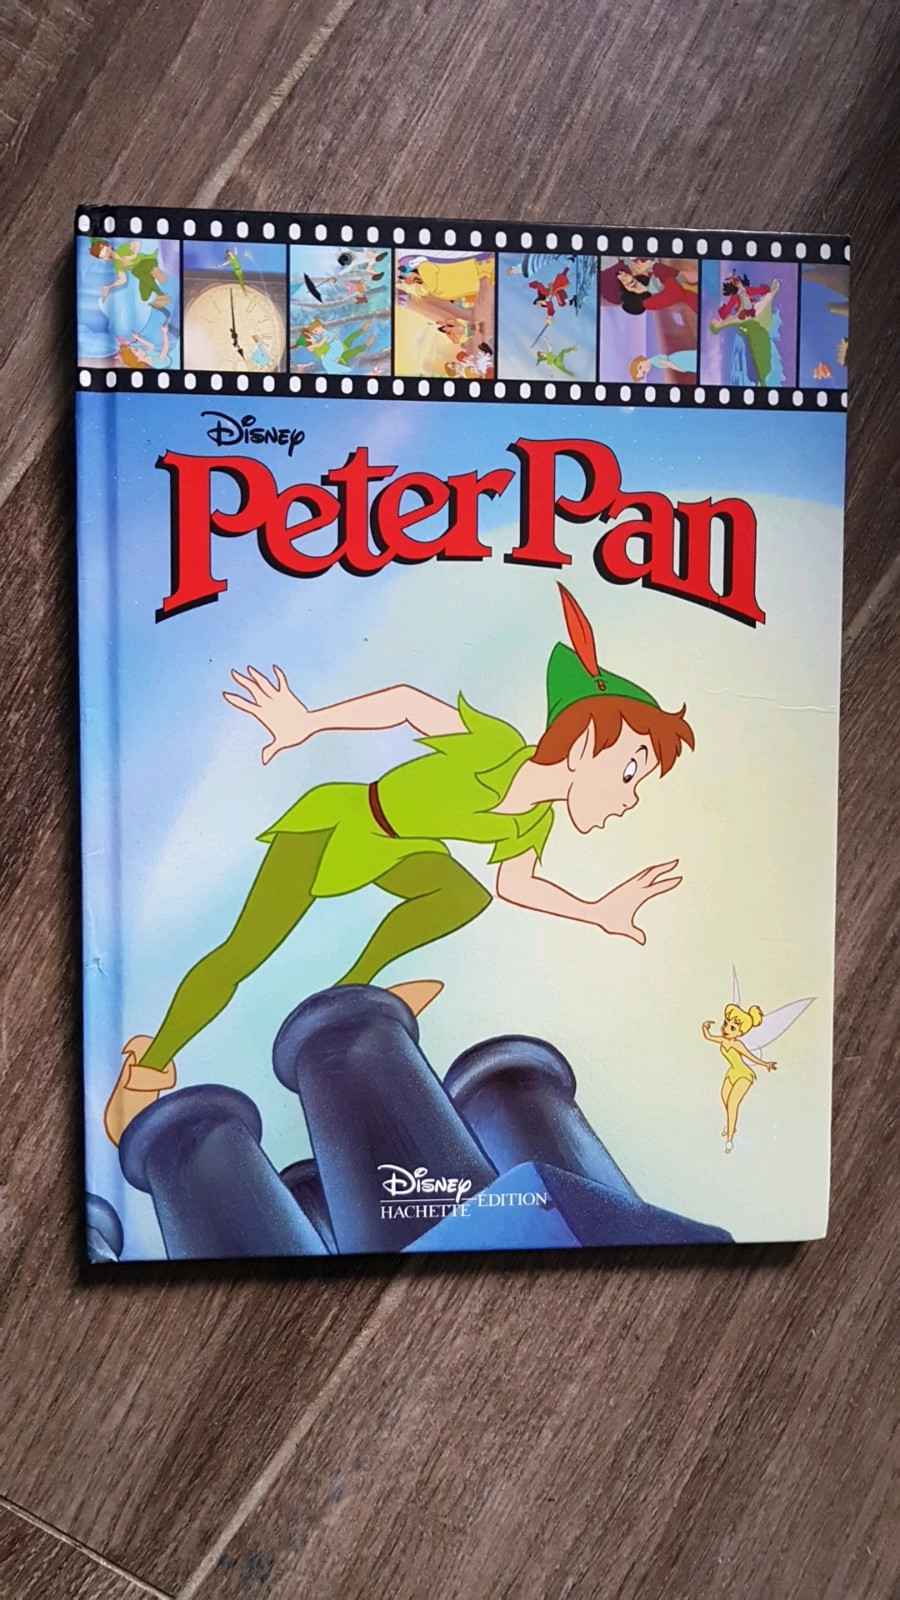 Hachette édition Disney Peter Pan